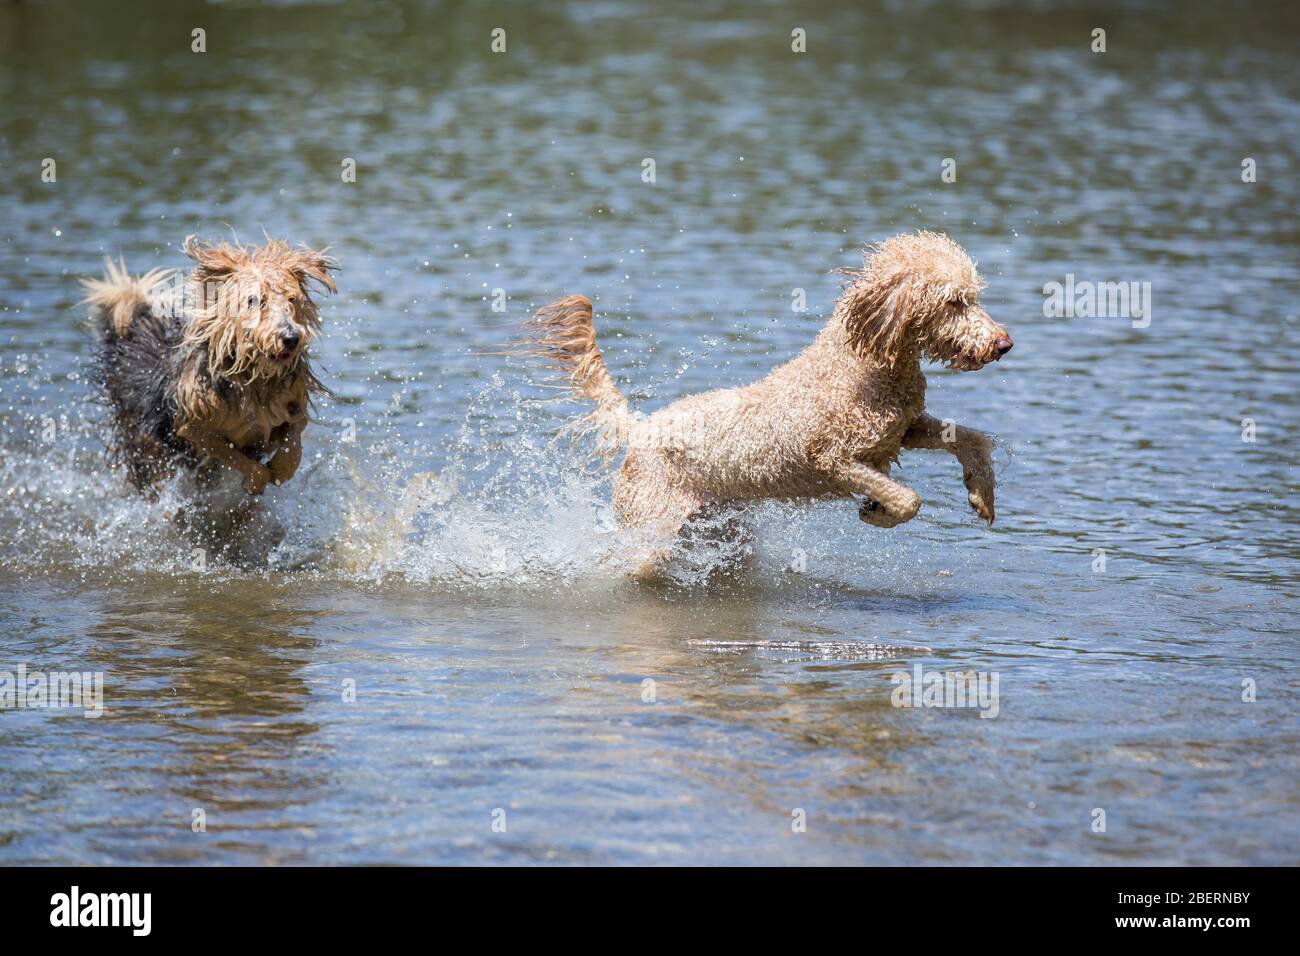 Junge Terrier und ein Pudel, der in den Fluss läuft.zwei glückliche Hunde laufen an einem sonnigen Tag im kalten Wasser eines kleinen Flusses, Leitha, Österreich Stockfoto